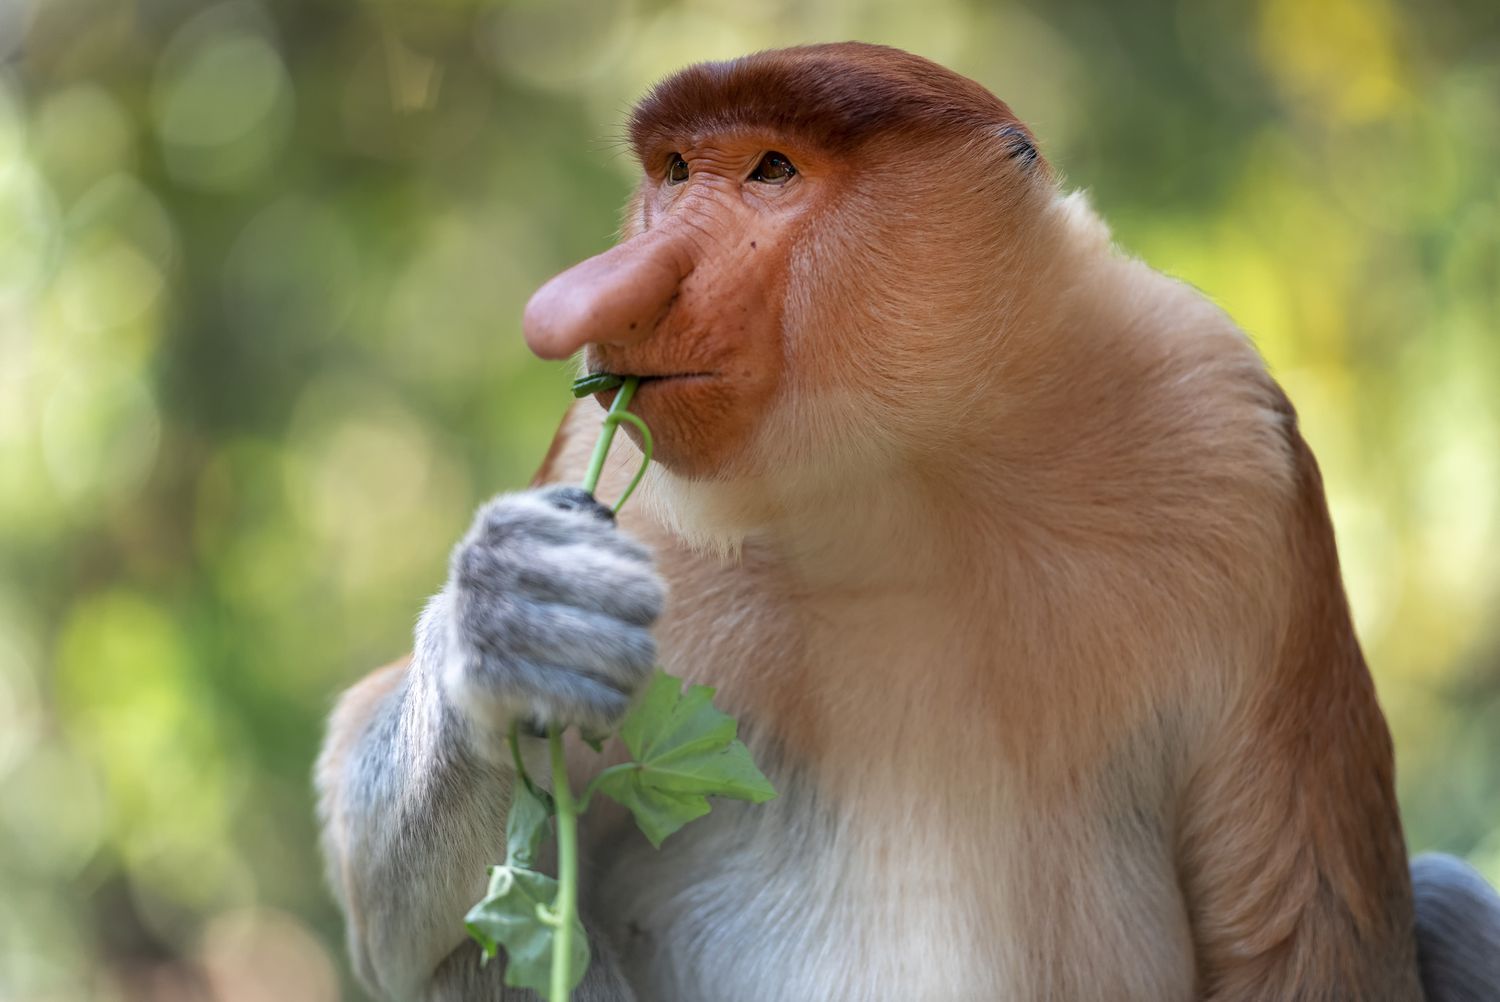 一只长着深棕色毛头的雄性长鼻猴正在咀嚼一棵绿色植物。